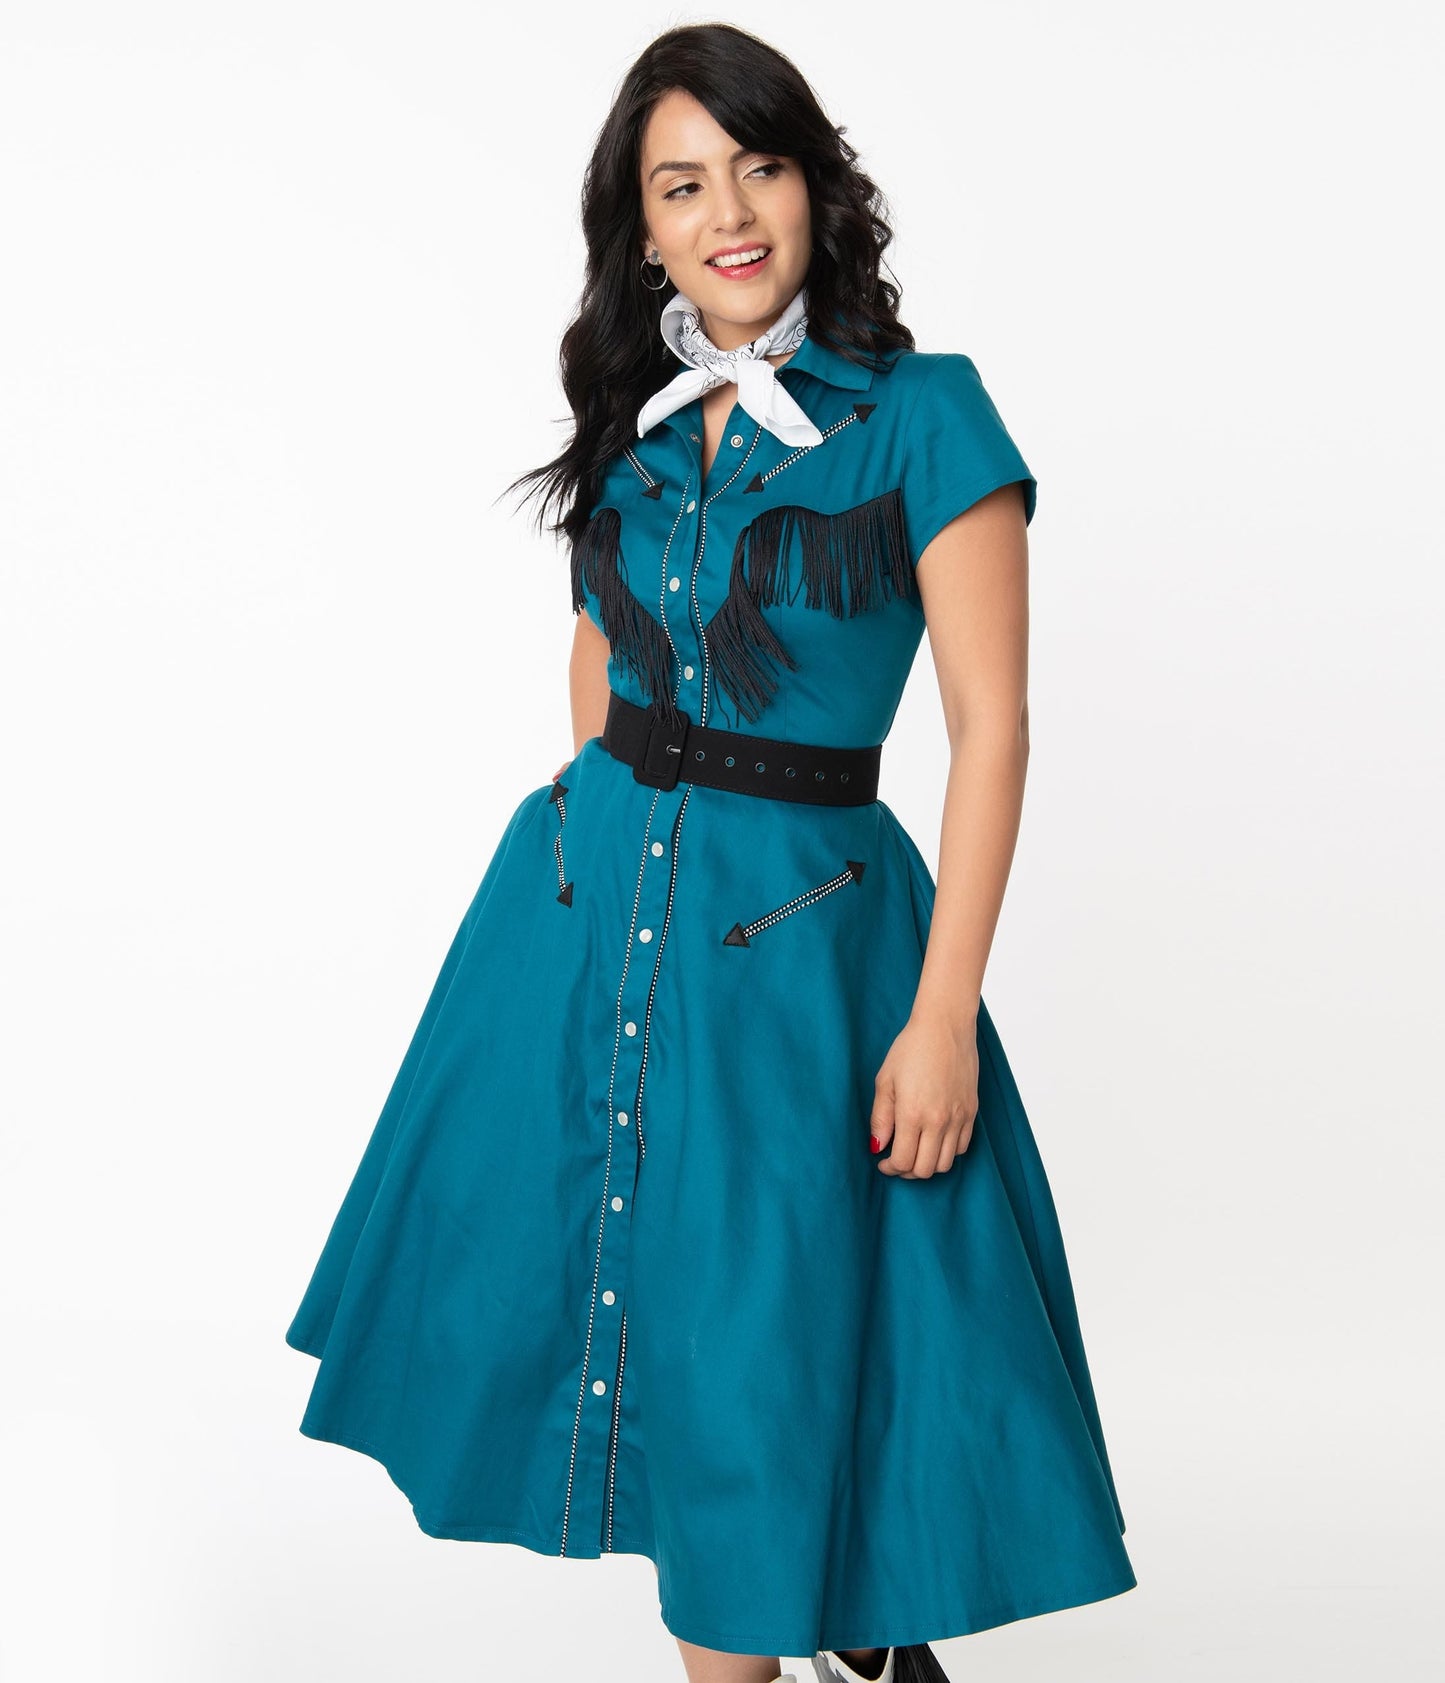 Unique Vintage Teal Madeline Swing Dress